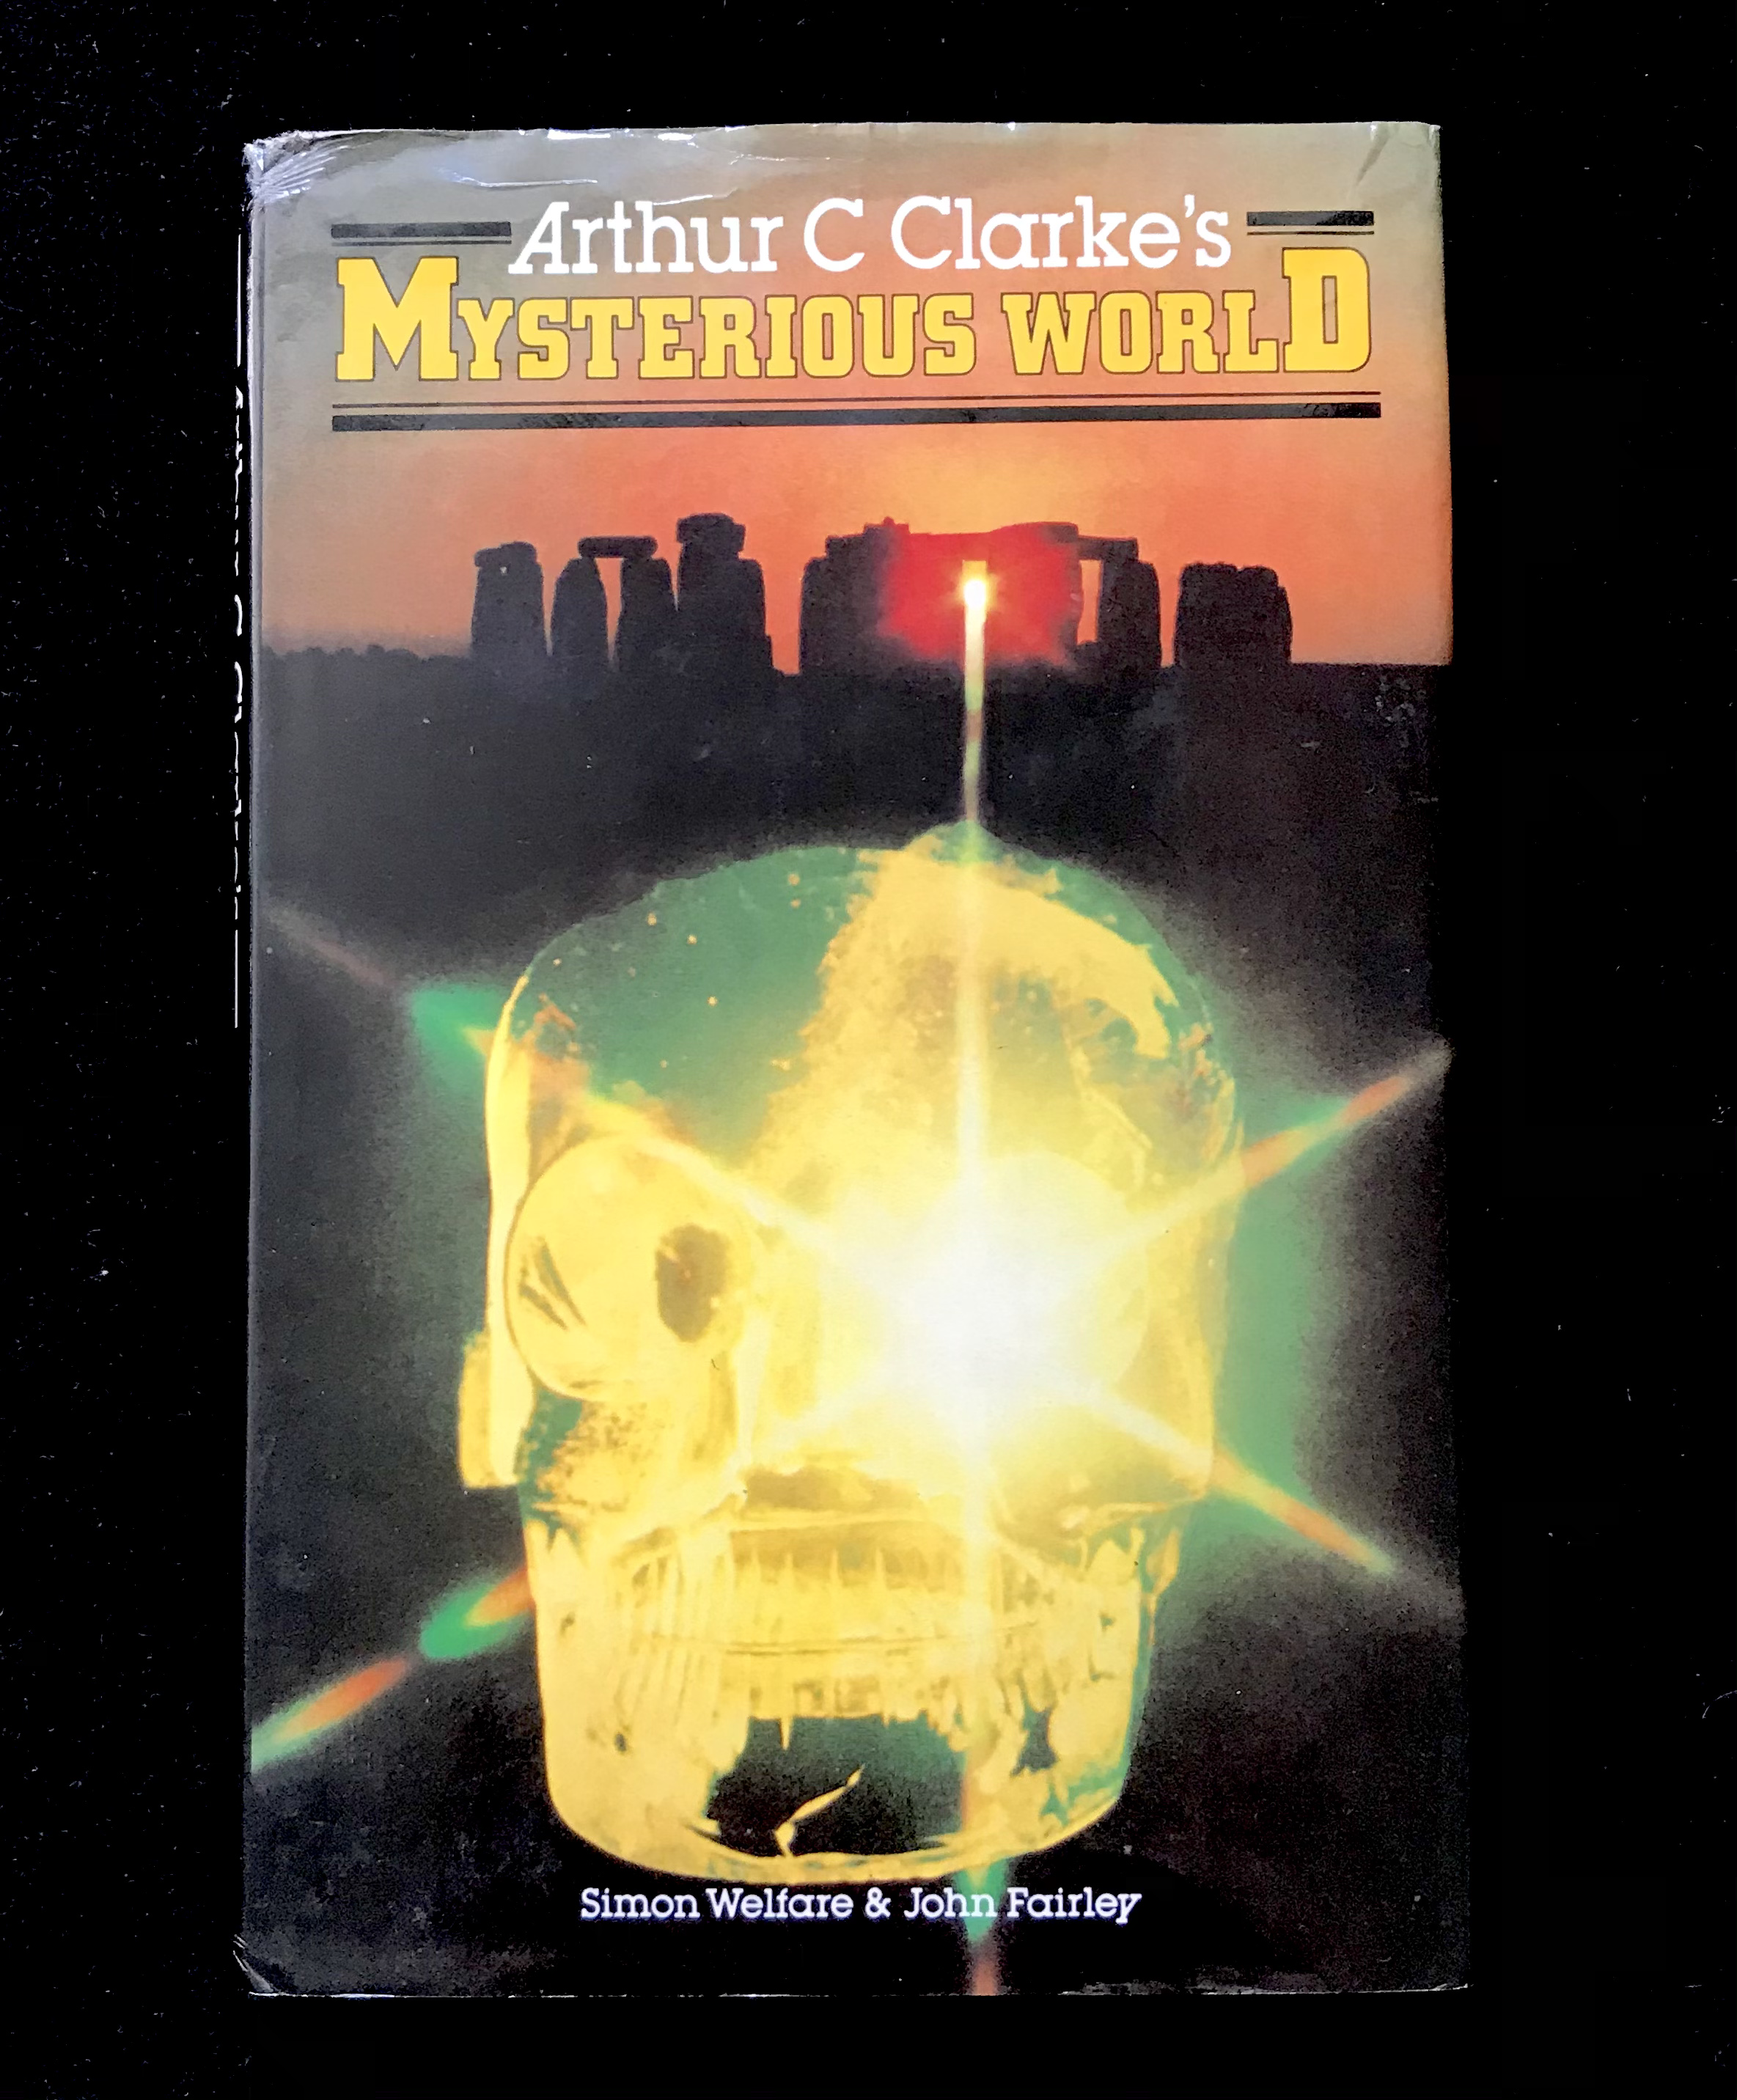 Arthur C Clarke's Mysterious World by Simon Welfare & John Fairley